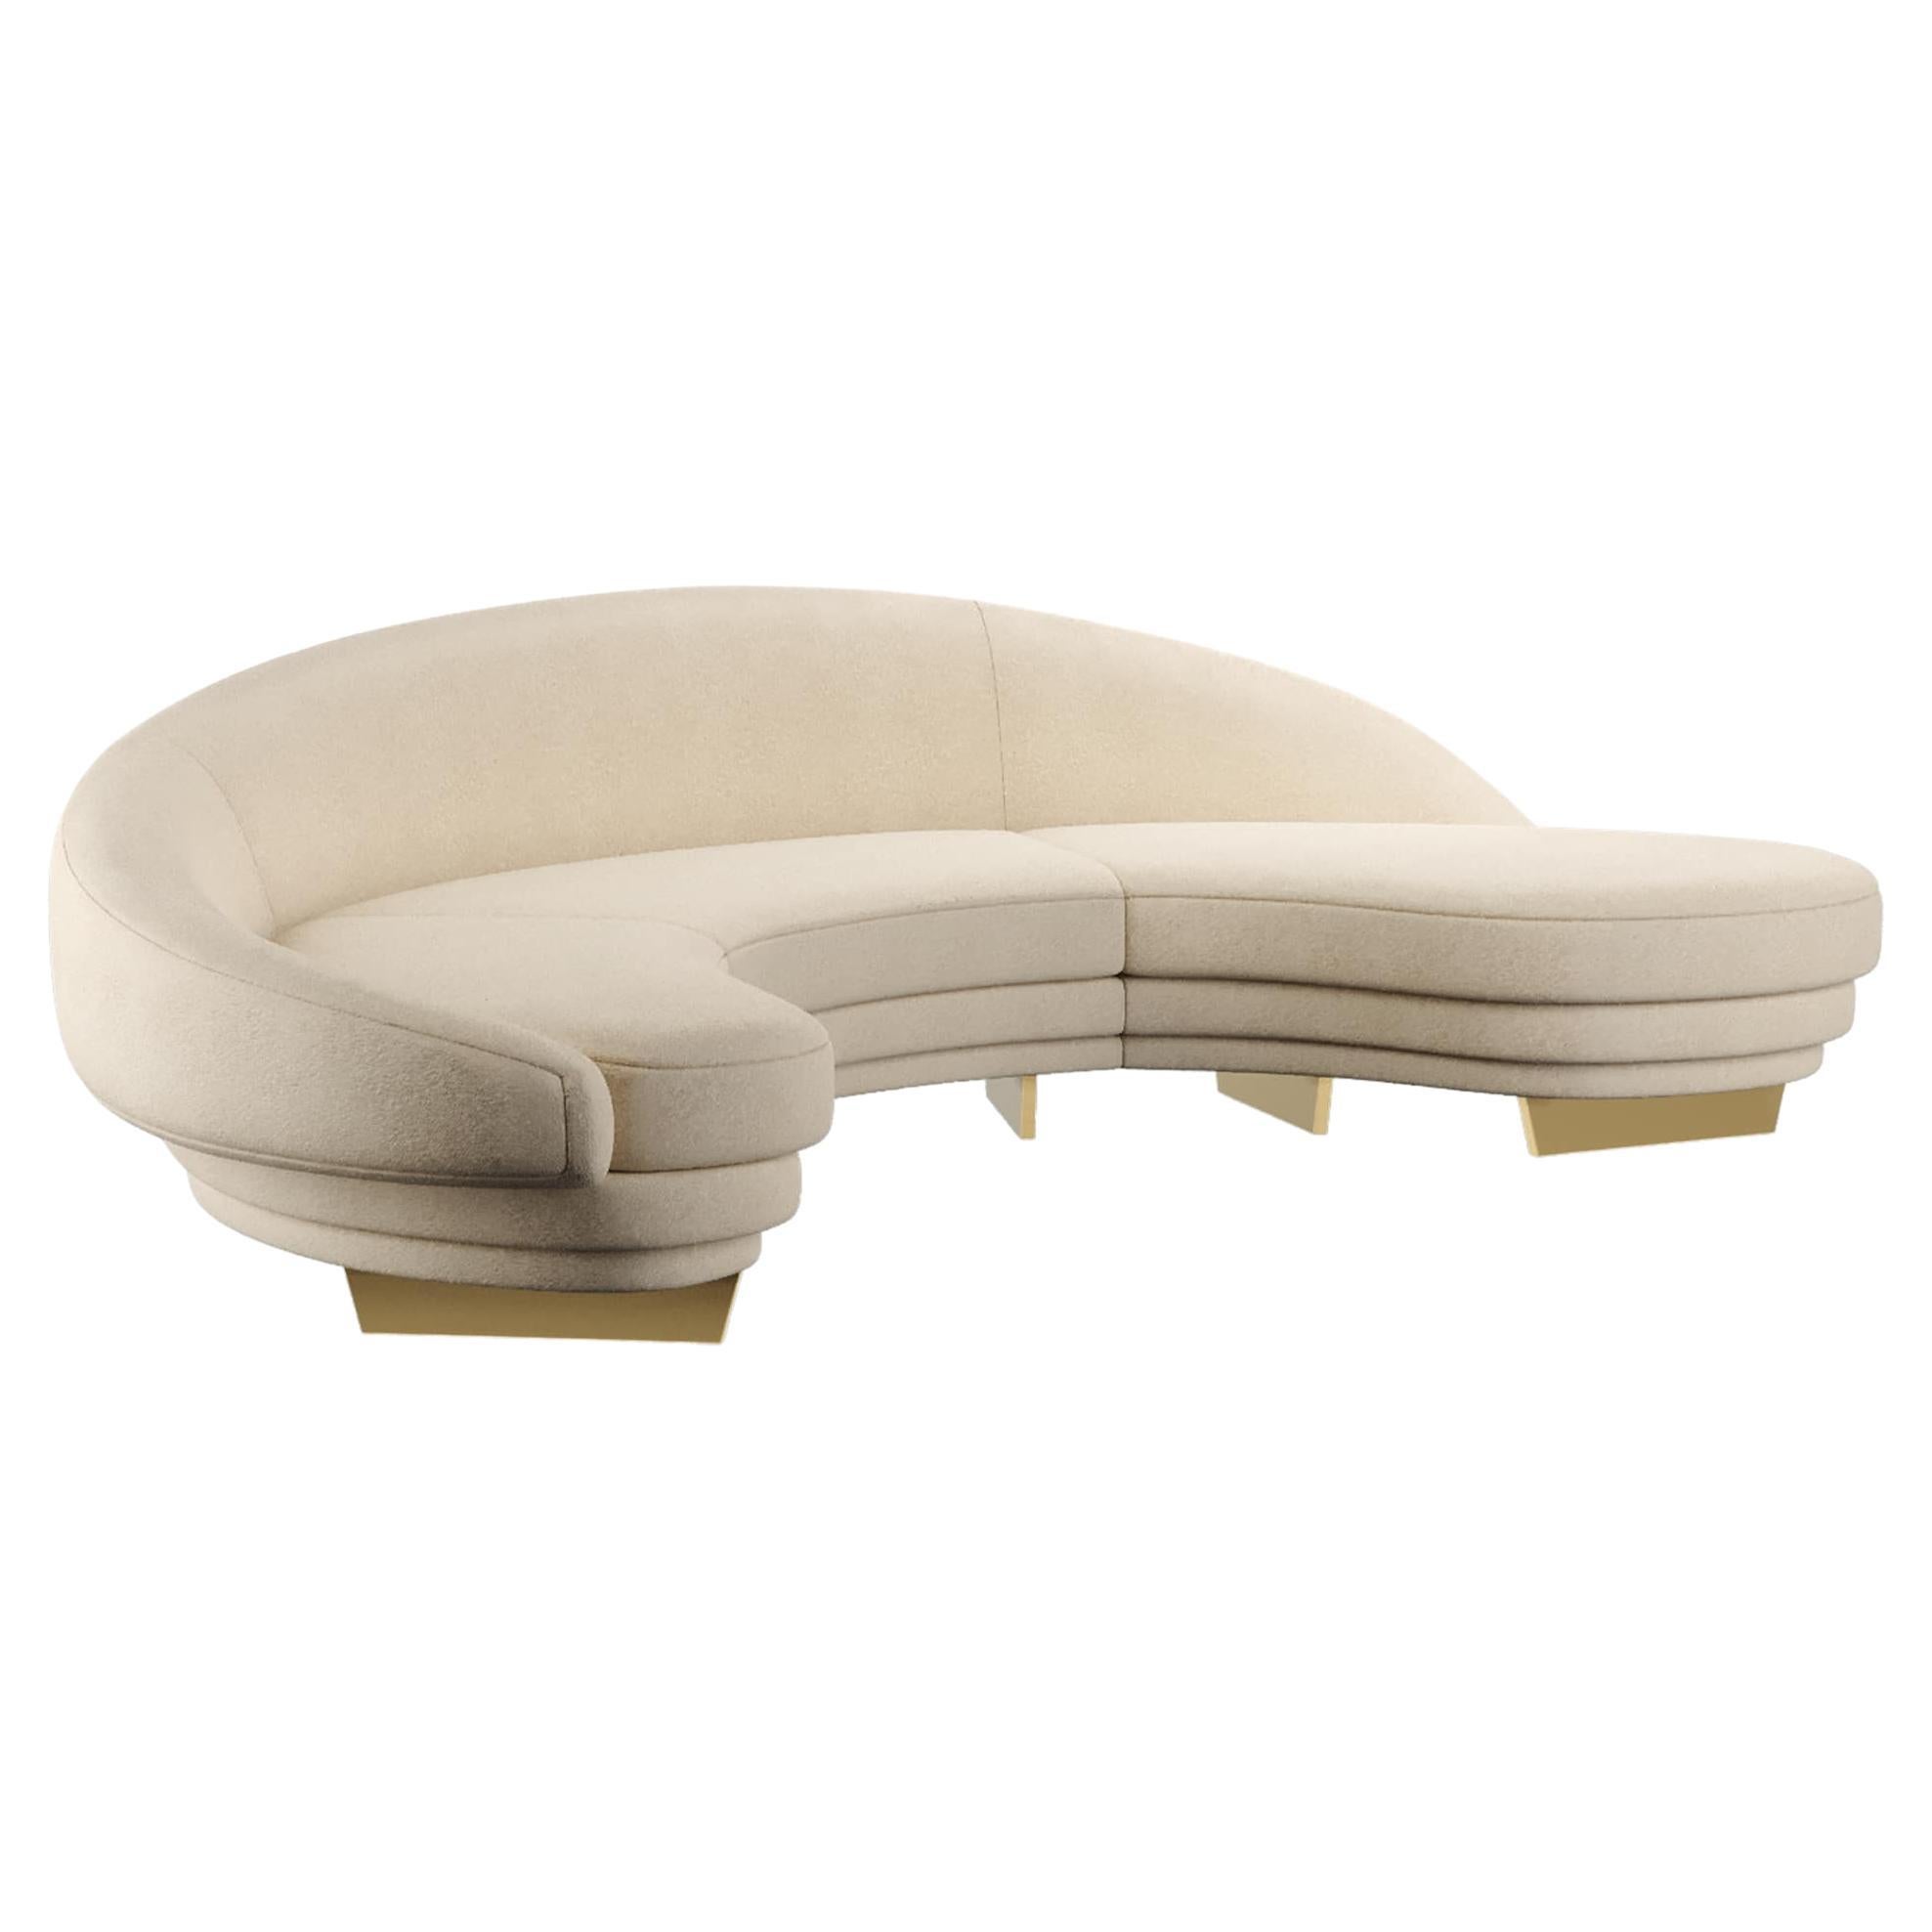 Modernes geschwungenes Serpentinen-Sofa aus beigem Samt mit Gold- und Holzdetails